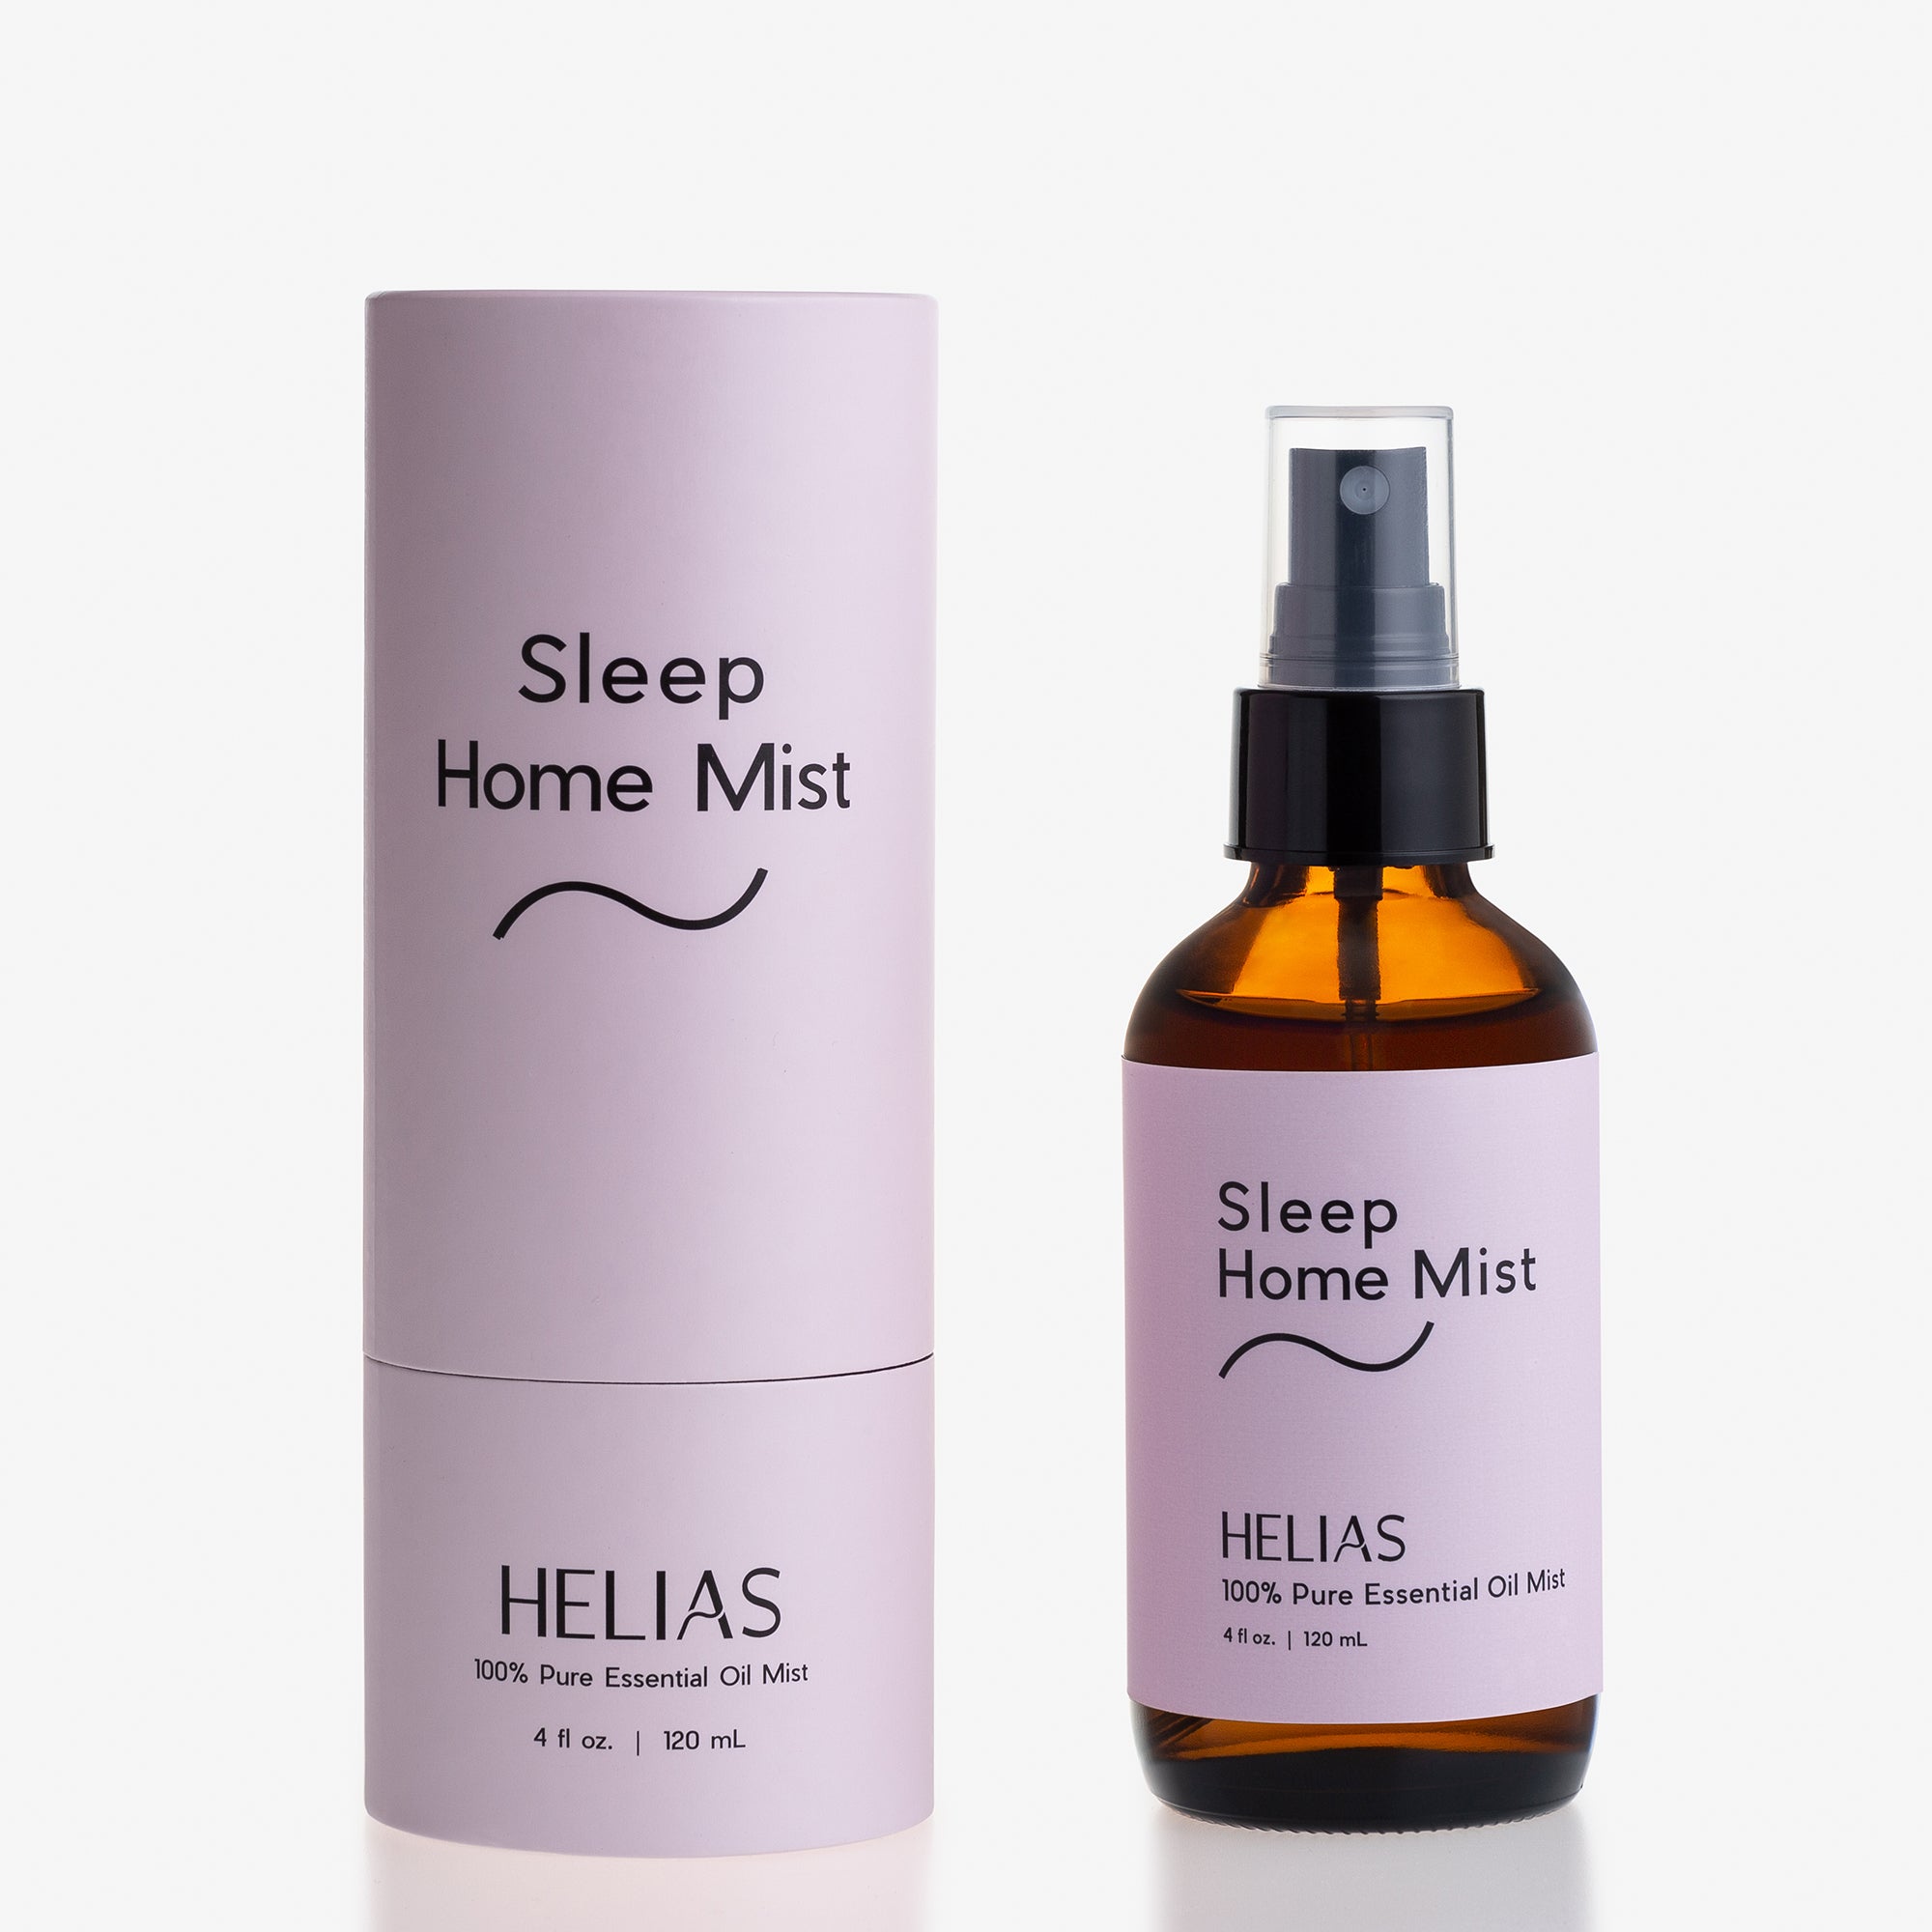 Sleep Home Mist Helias Oils